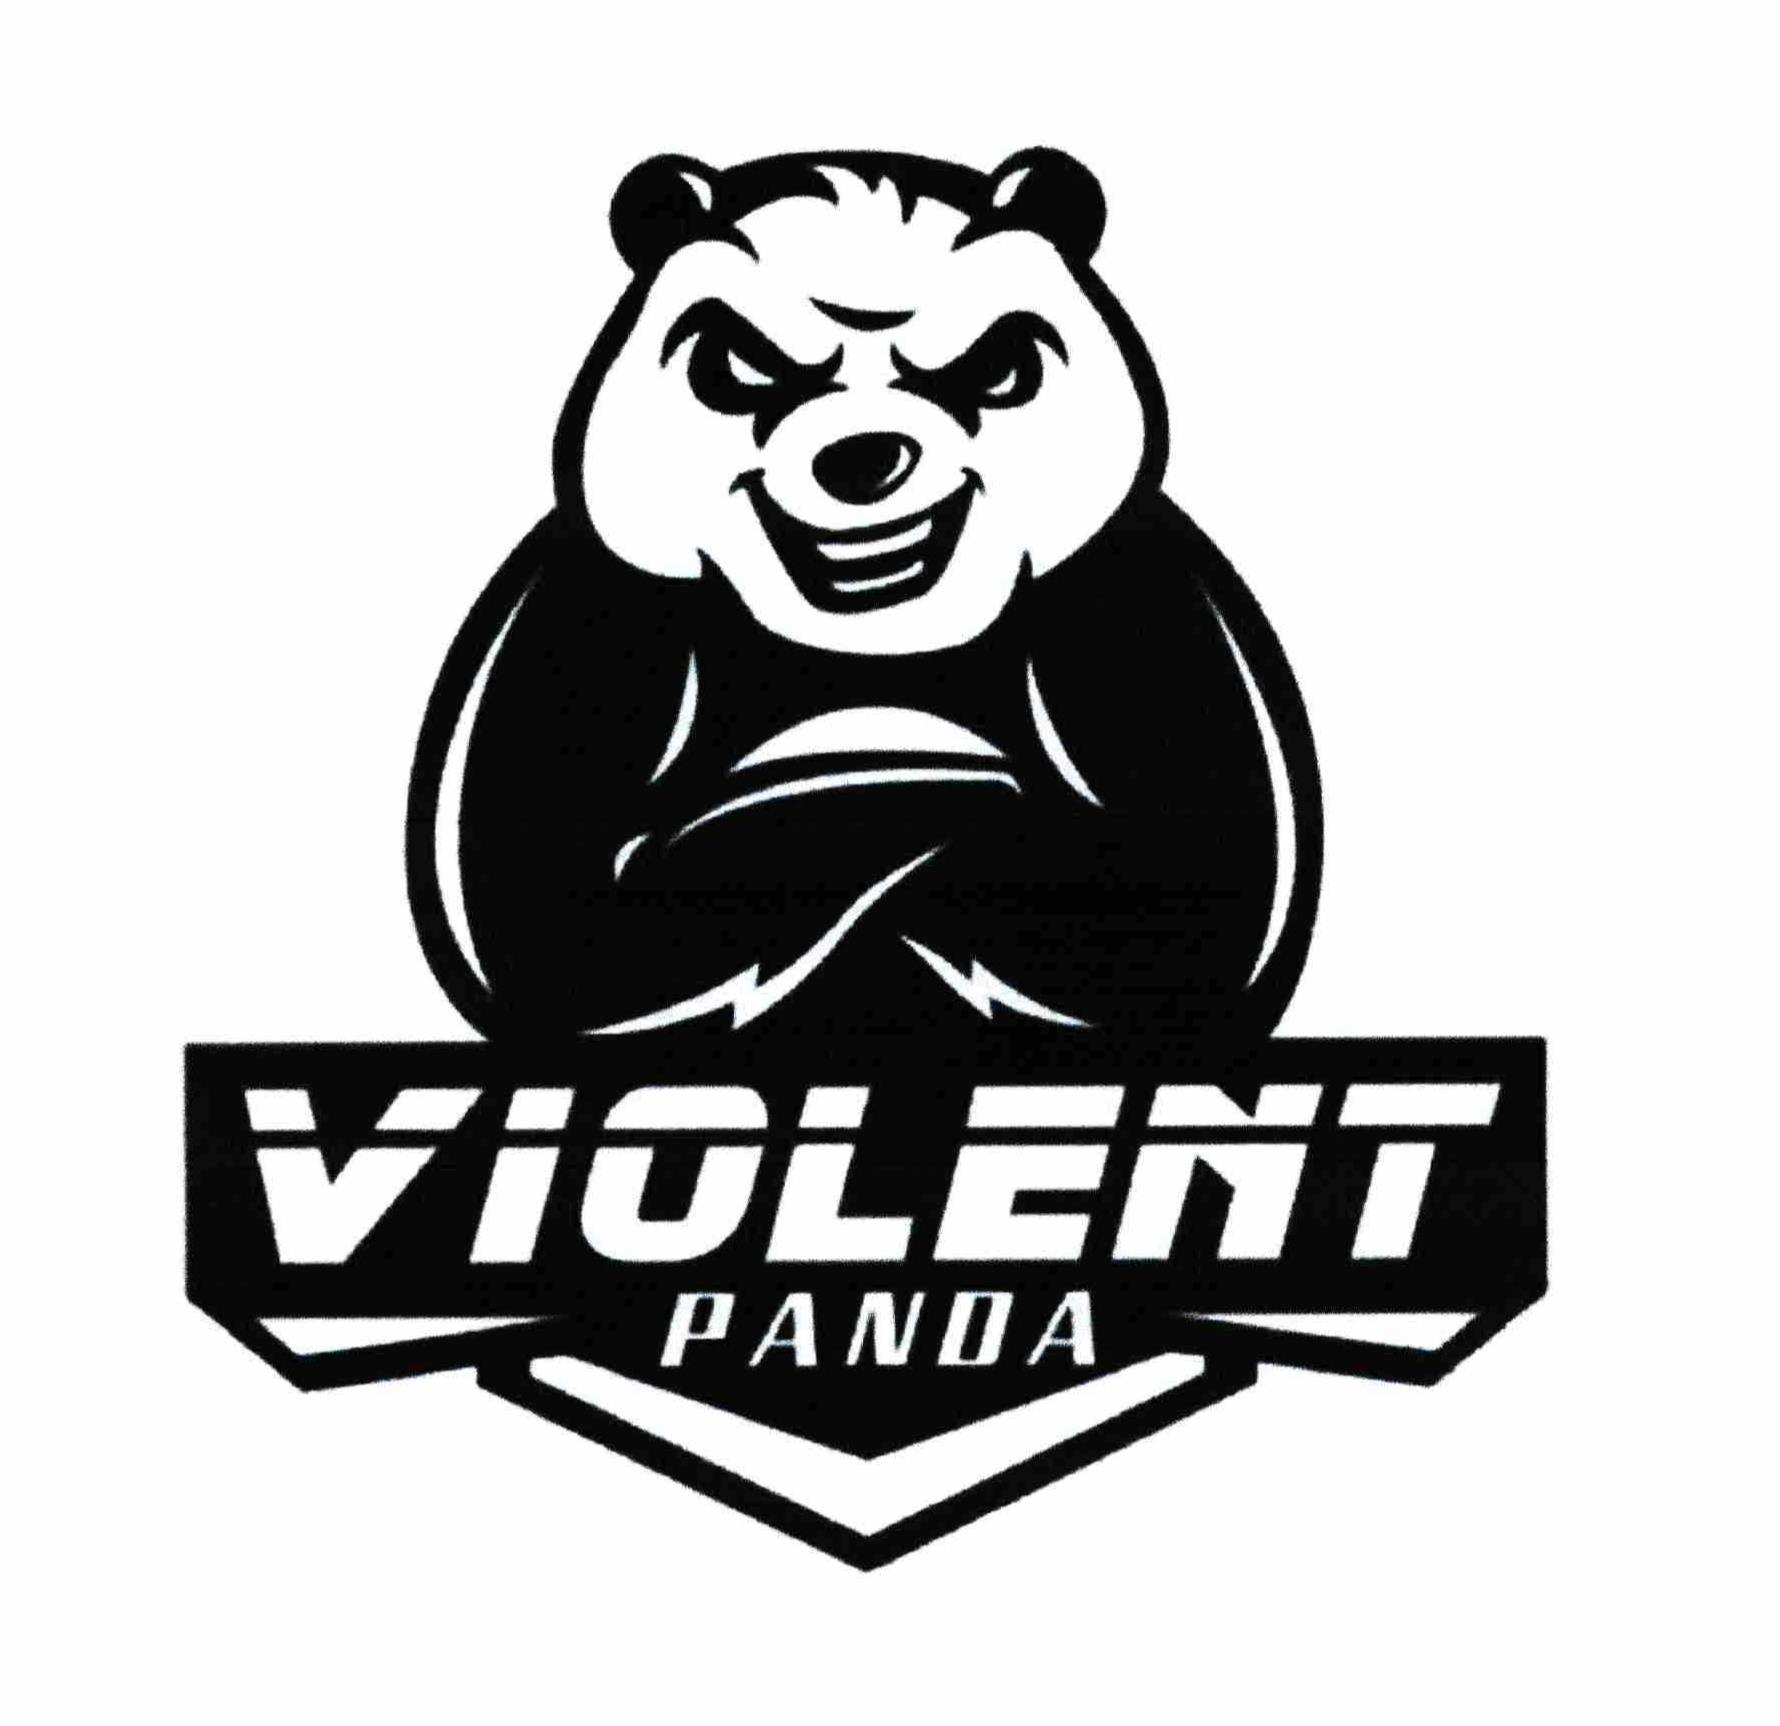  VIOLENT PANDA